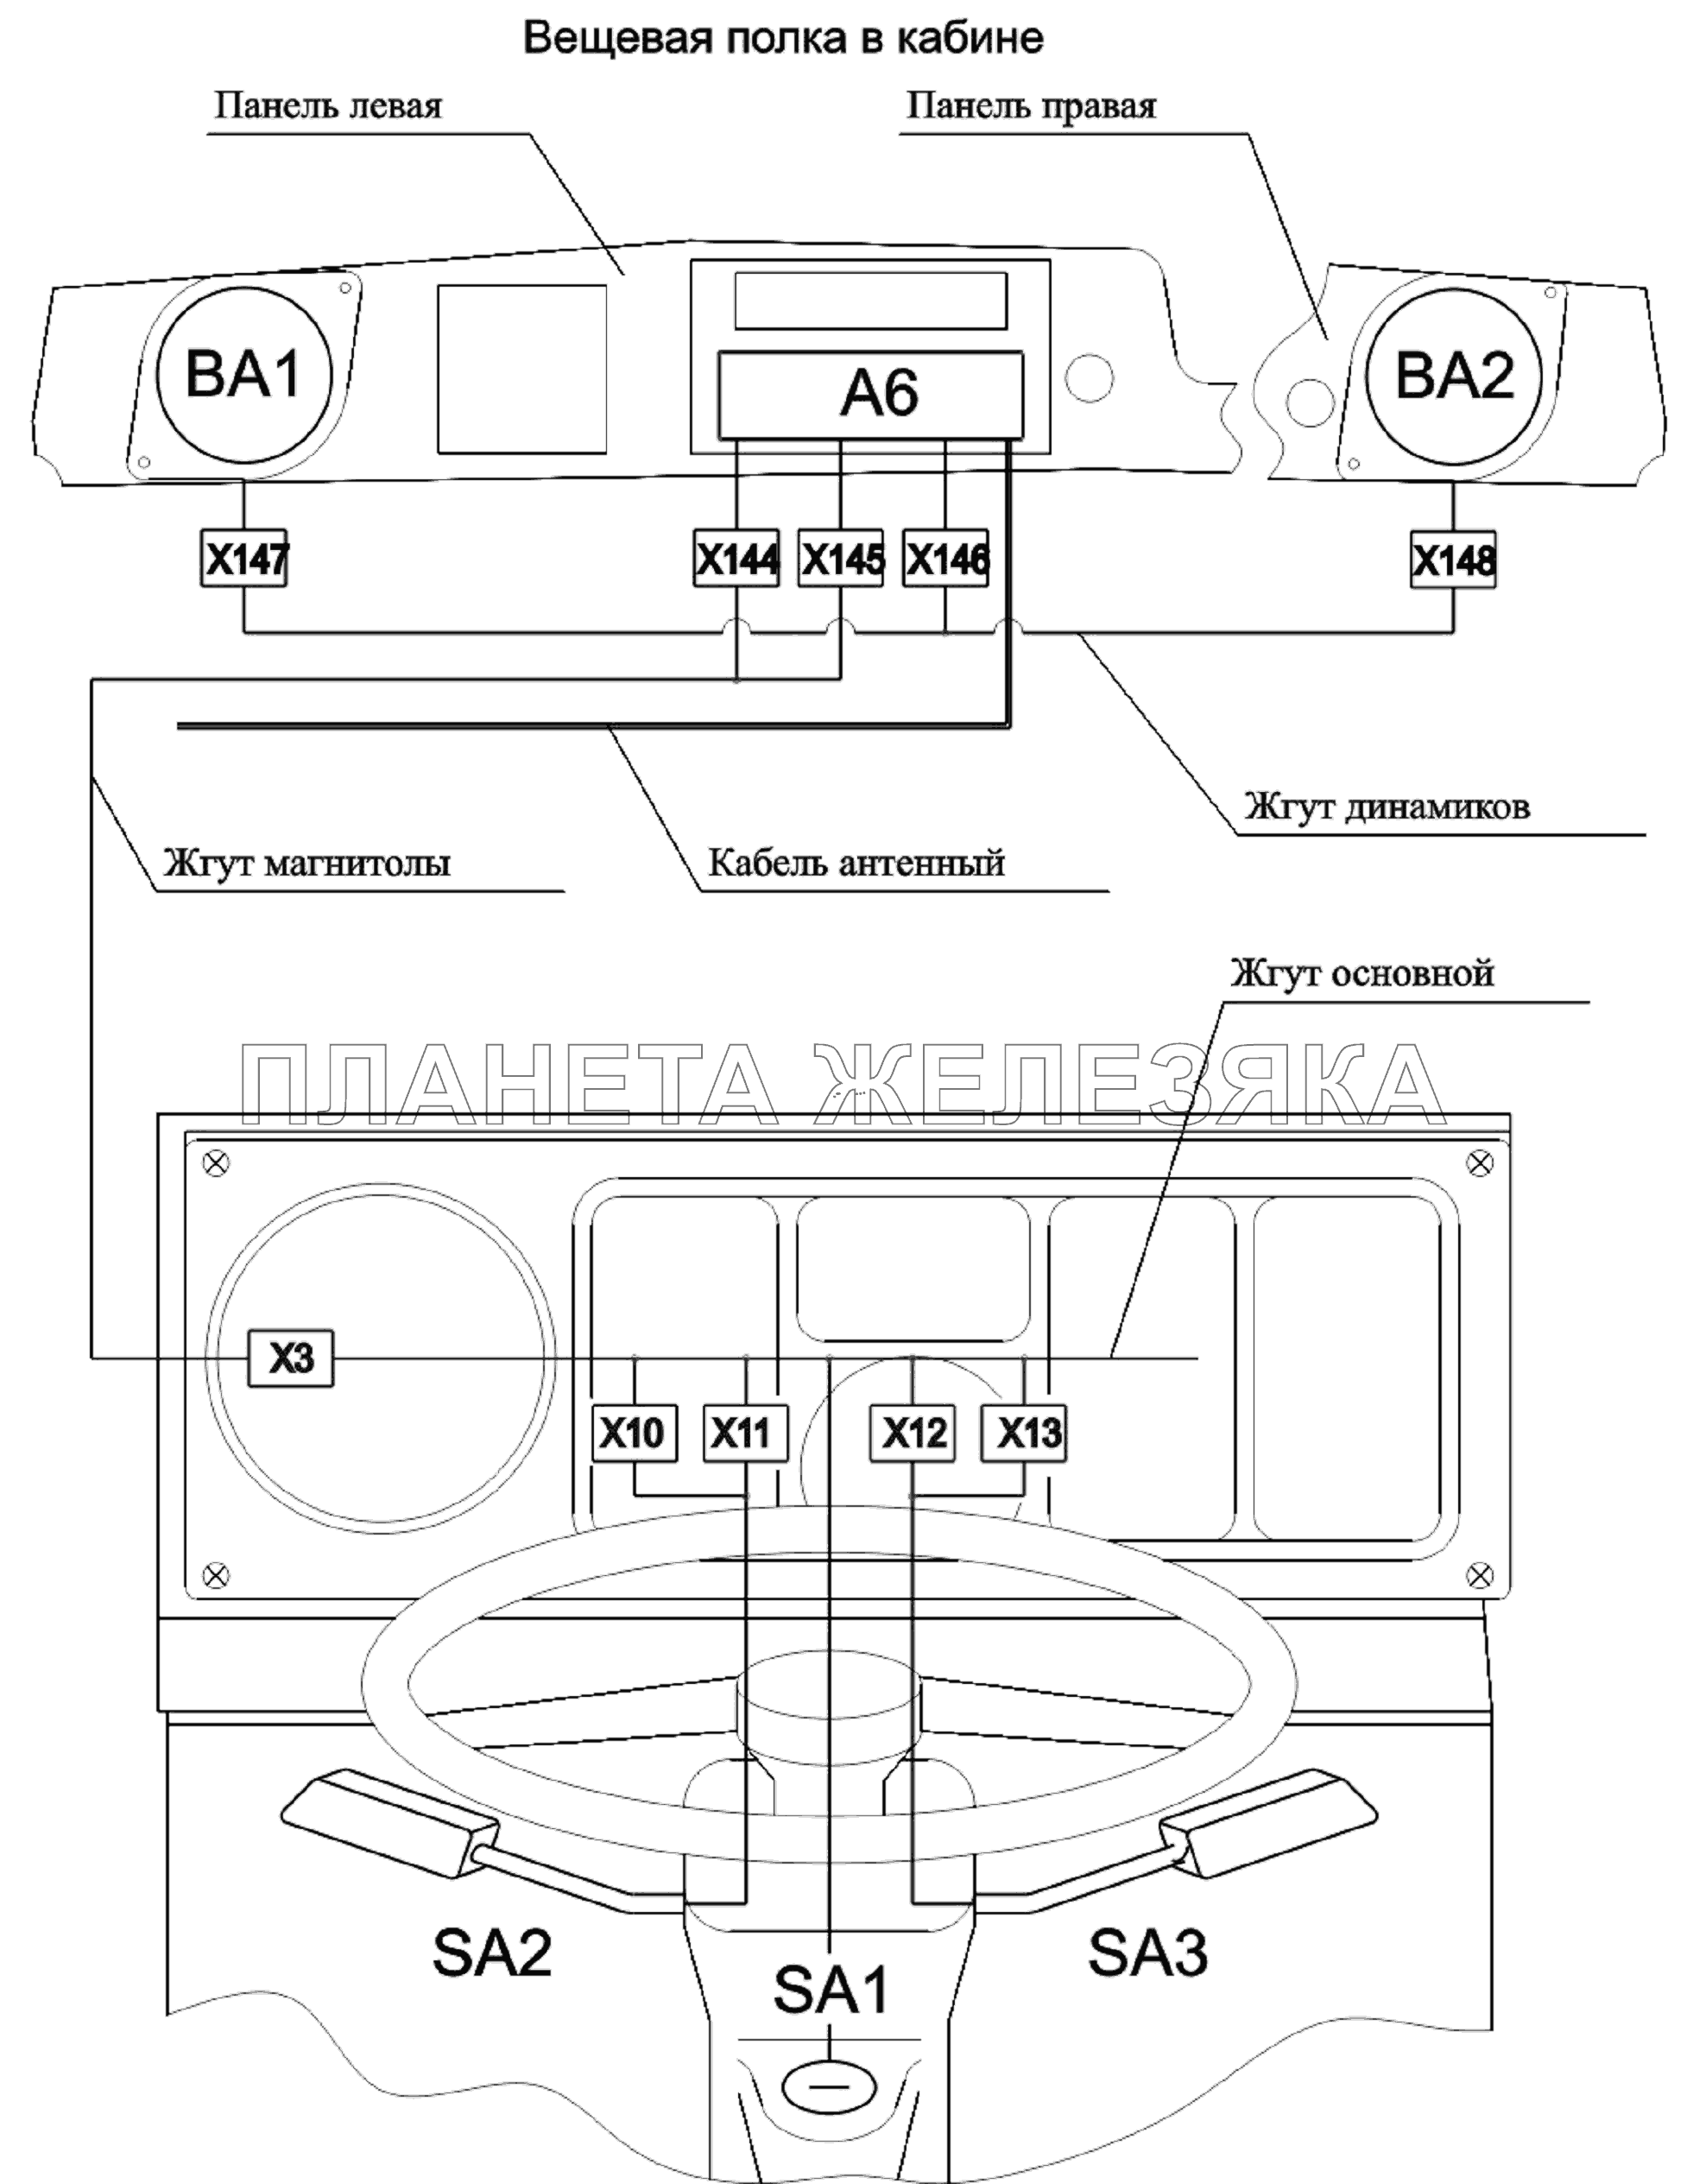 Расположение разъемов и элементов электрооборудования на рулевой колонке и вещевой полке МАЗ-6303A3, 6303A5